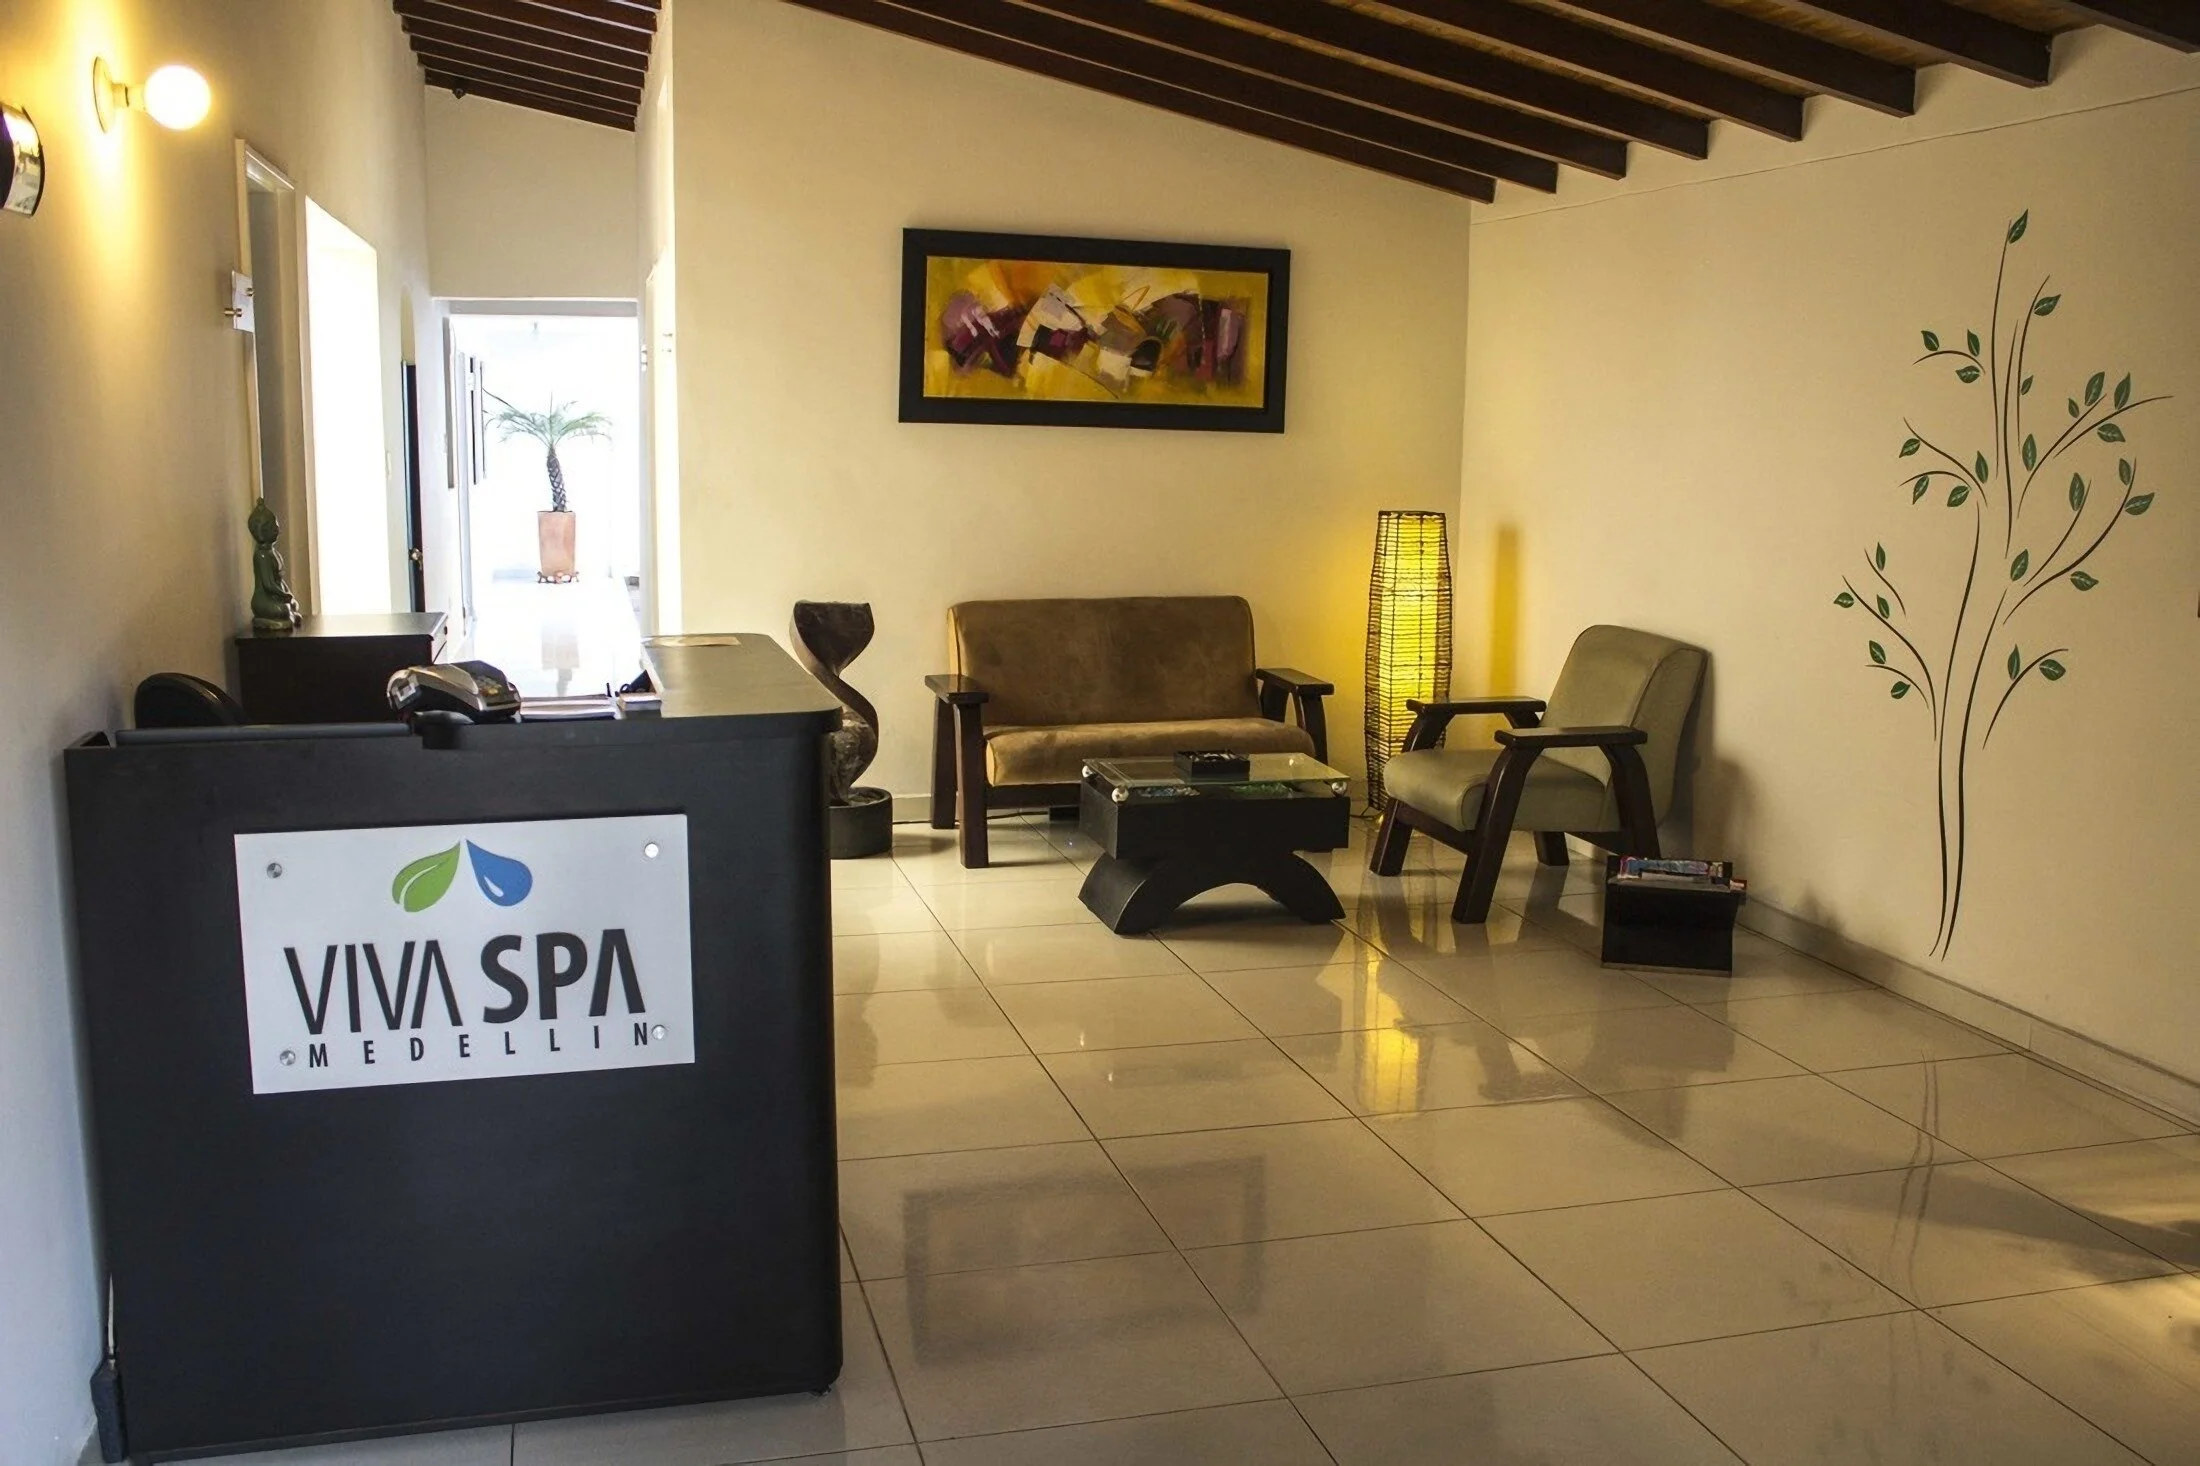 Spa-viva-spa-4940